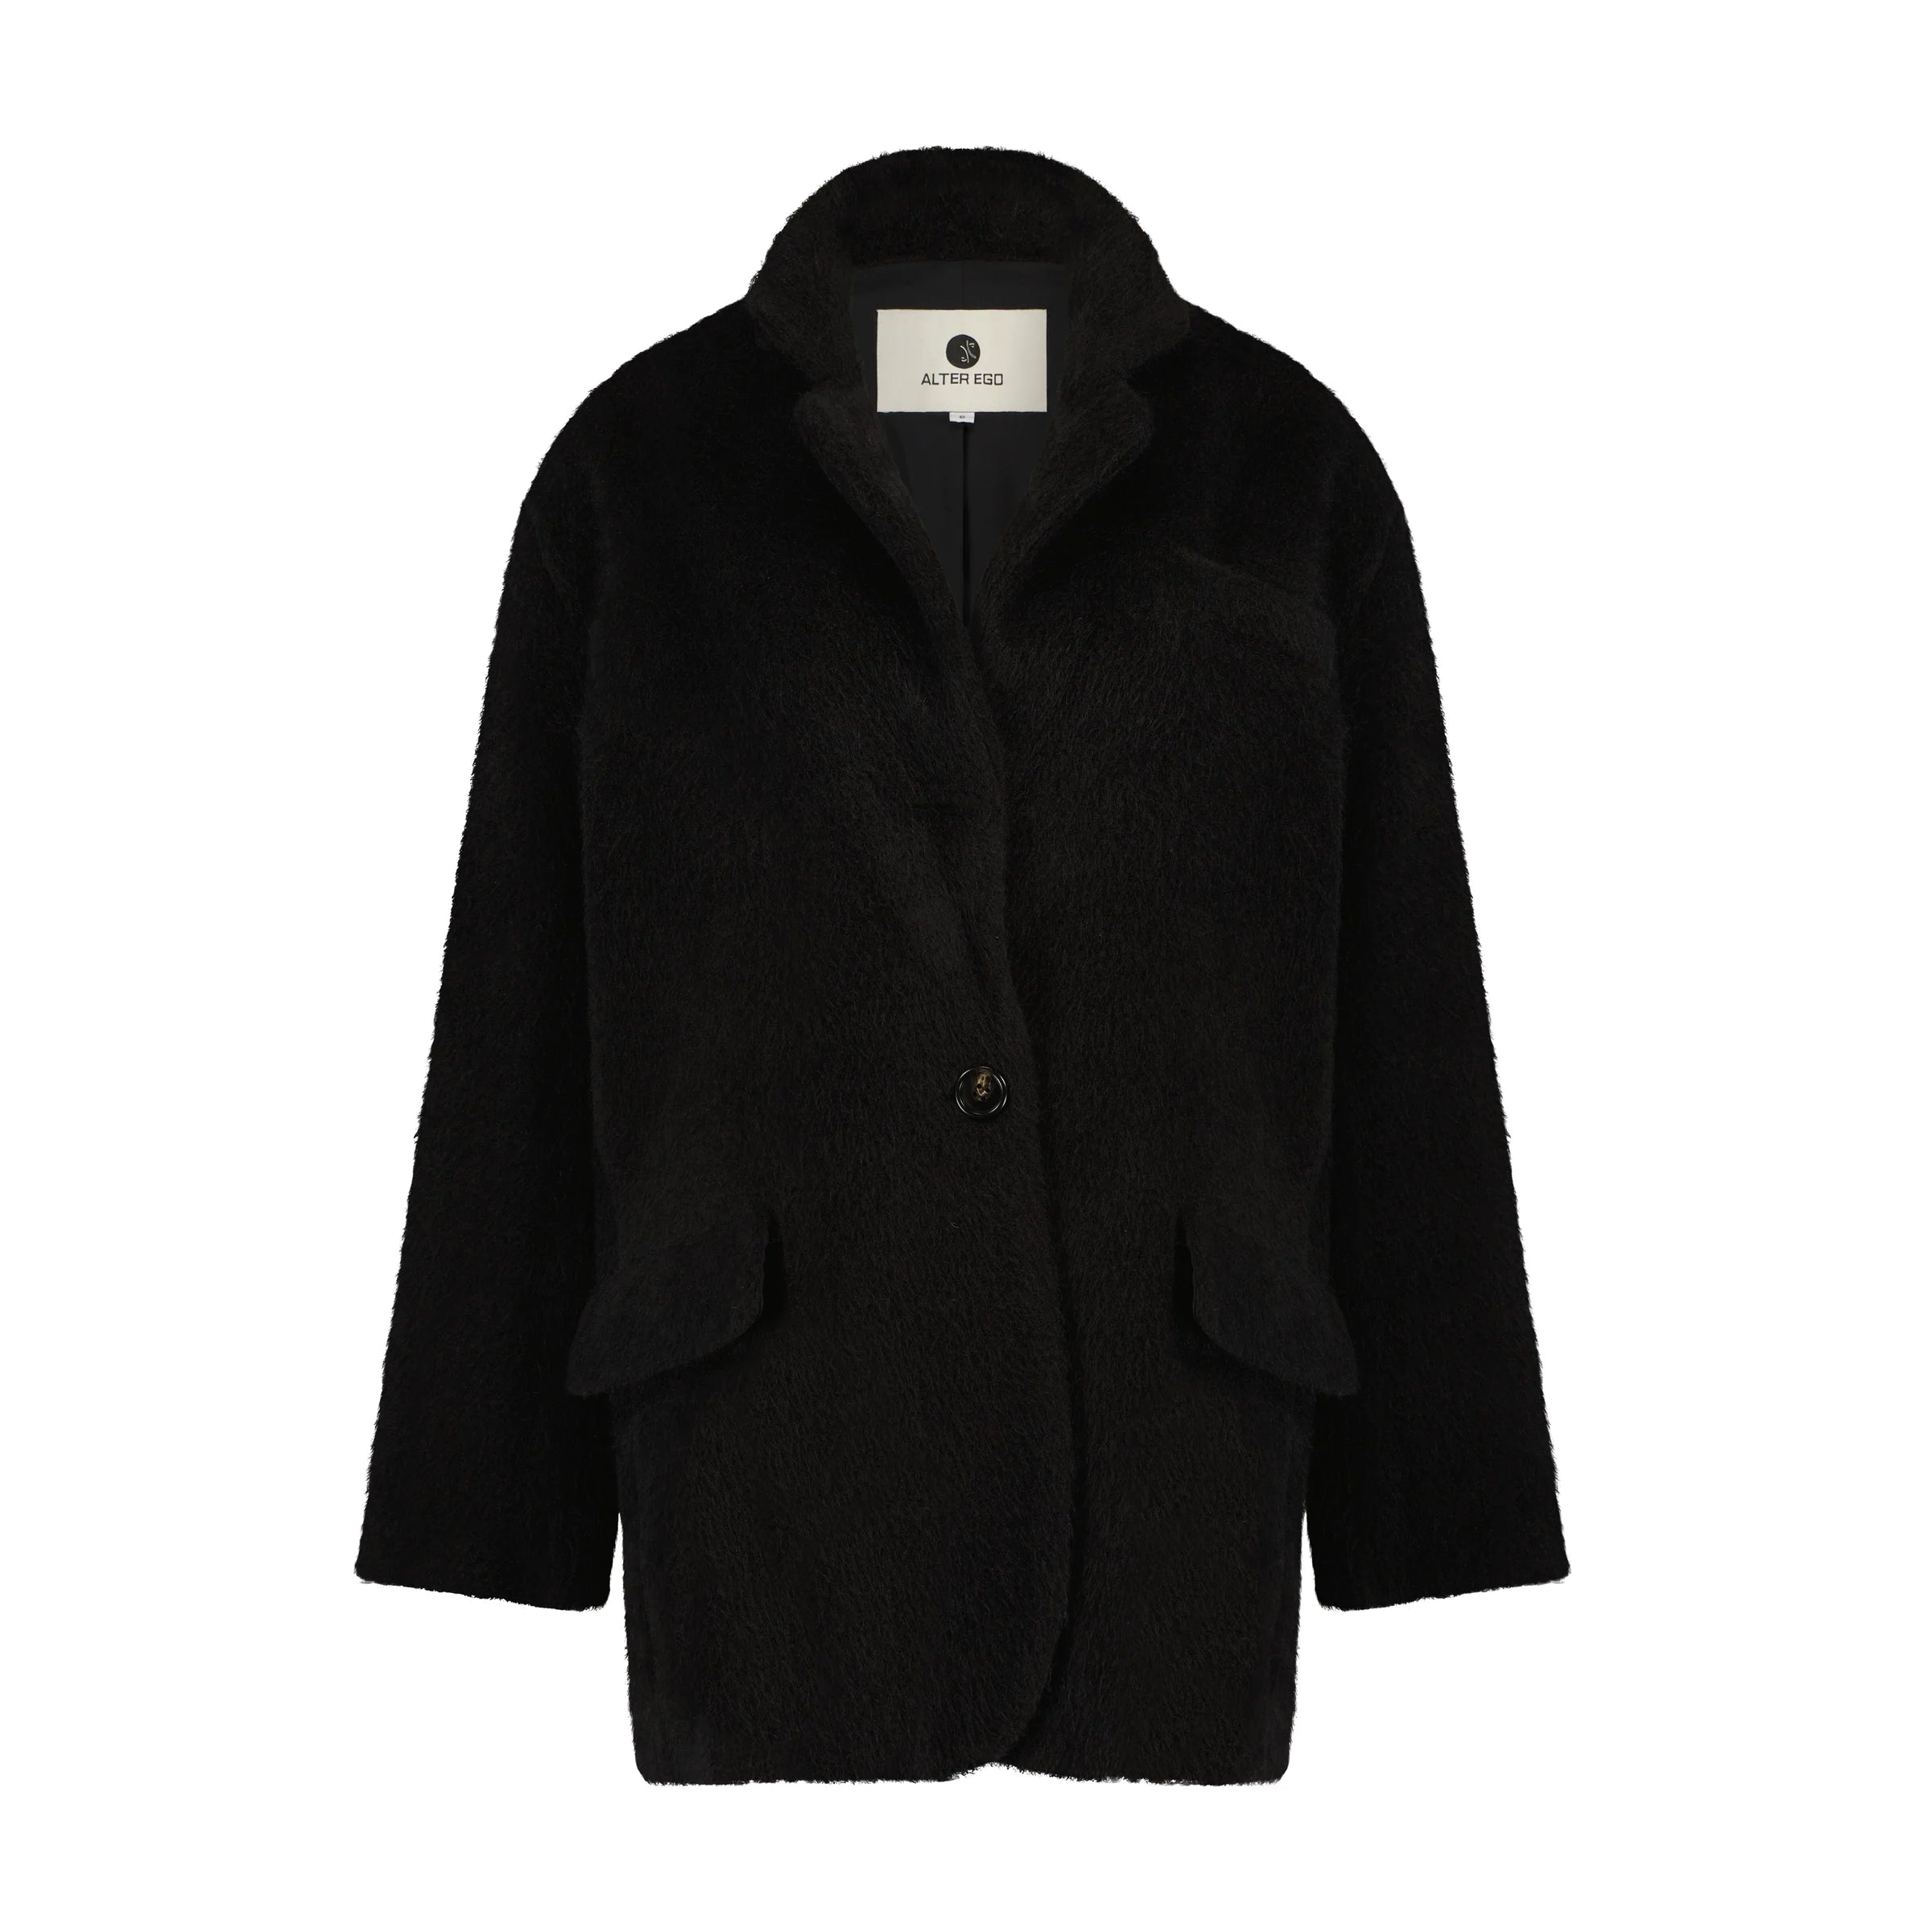 Kae blazer coat - black